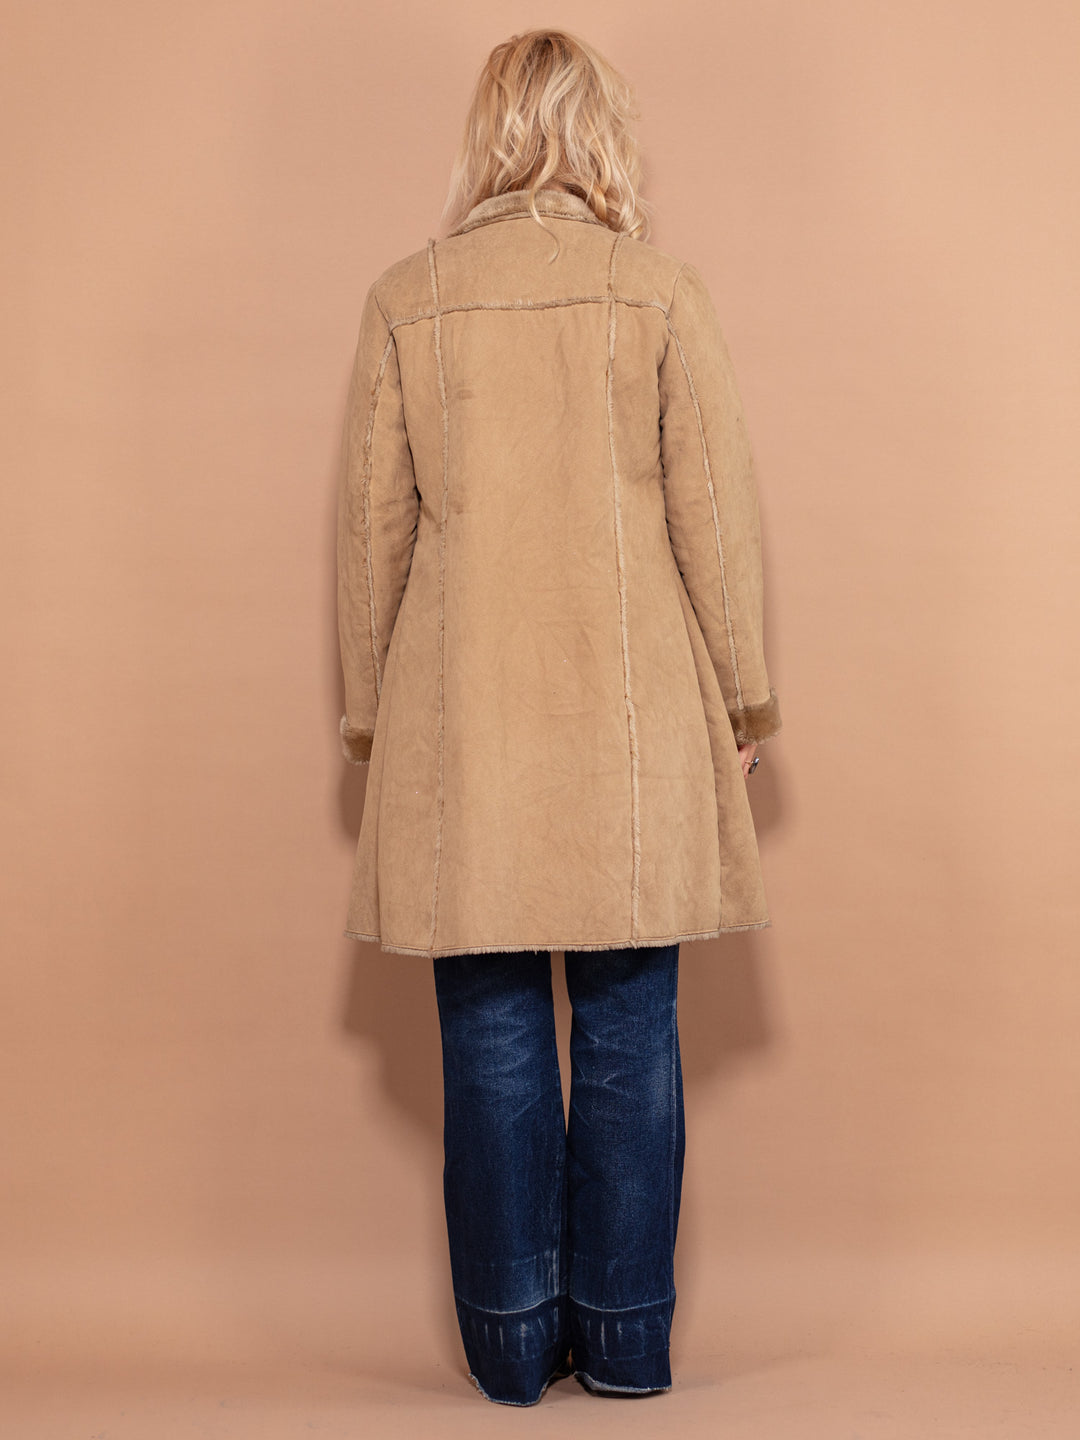 90's Faux Sheepskin Coat, Size Small, Vintage Women Sherpa Coat, Beige Zip Up Coat, Casual Boho Coat, Women Winter Wear, 90's Clothing